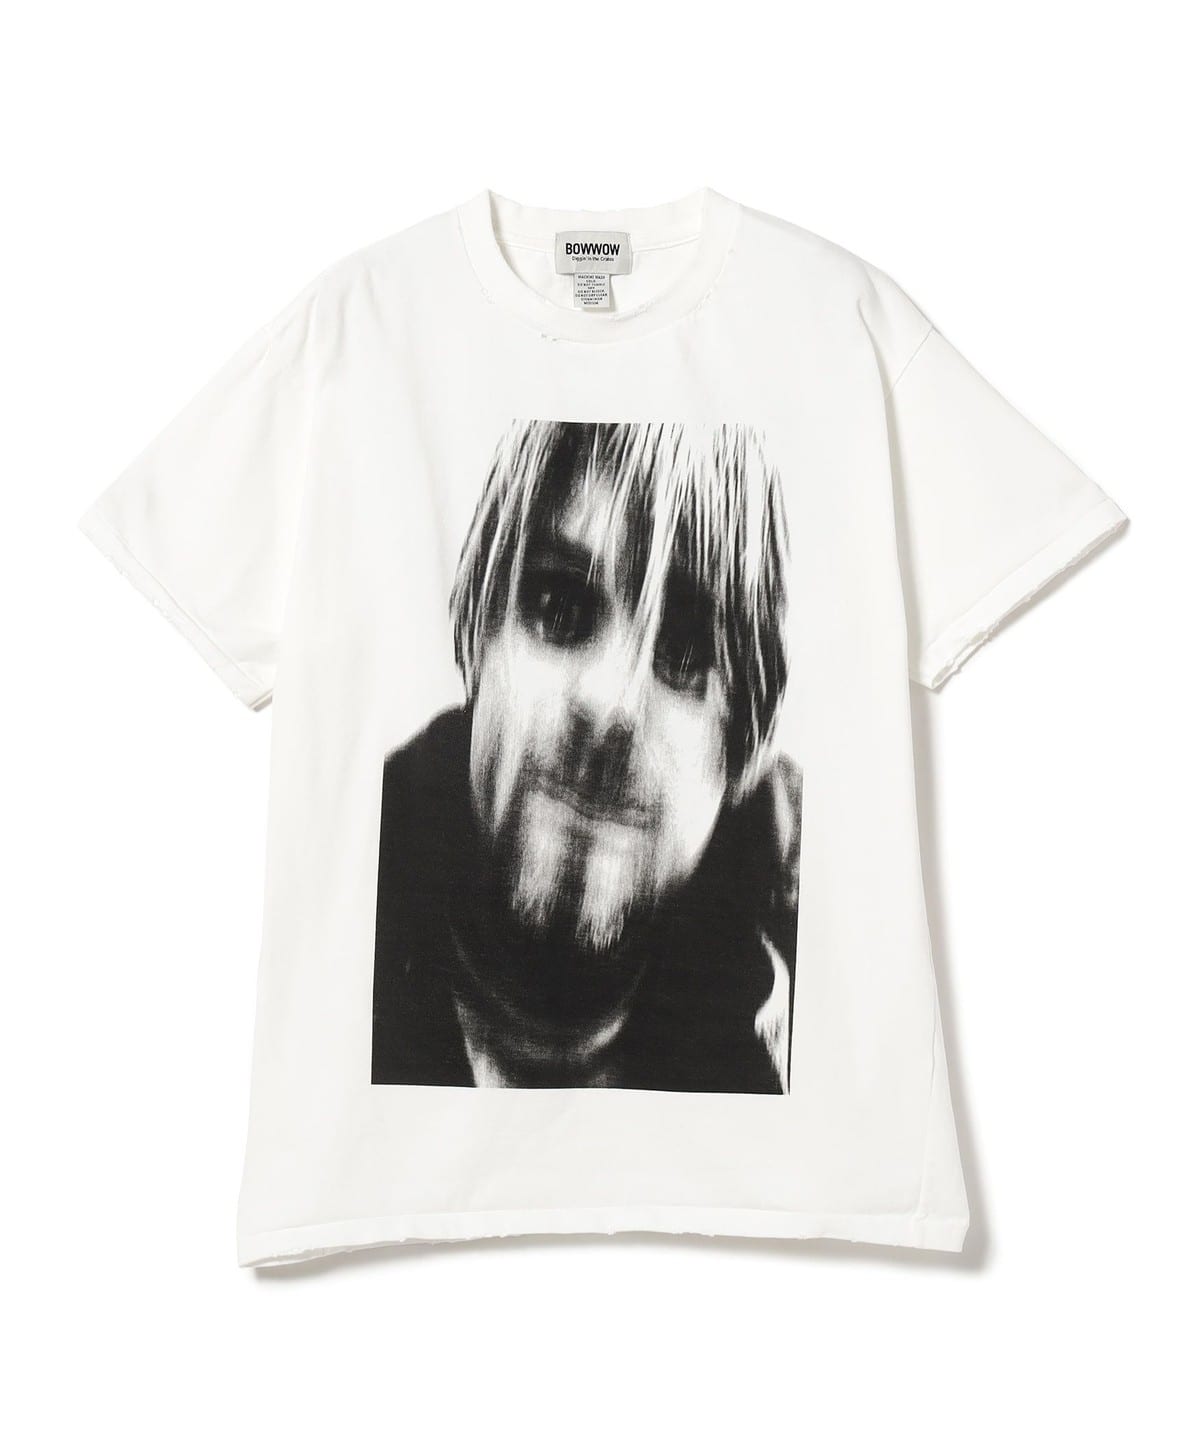 6,150円【XLサイズ】 BOW WOW × BEAMS Tシャツ